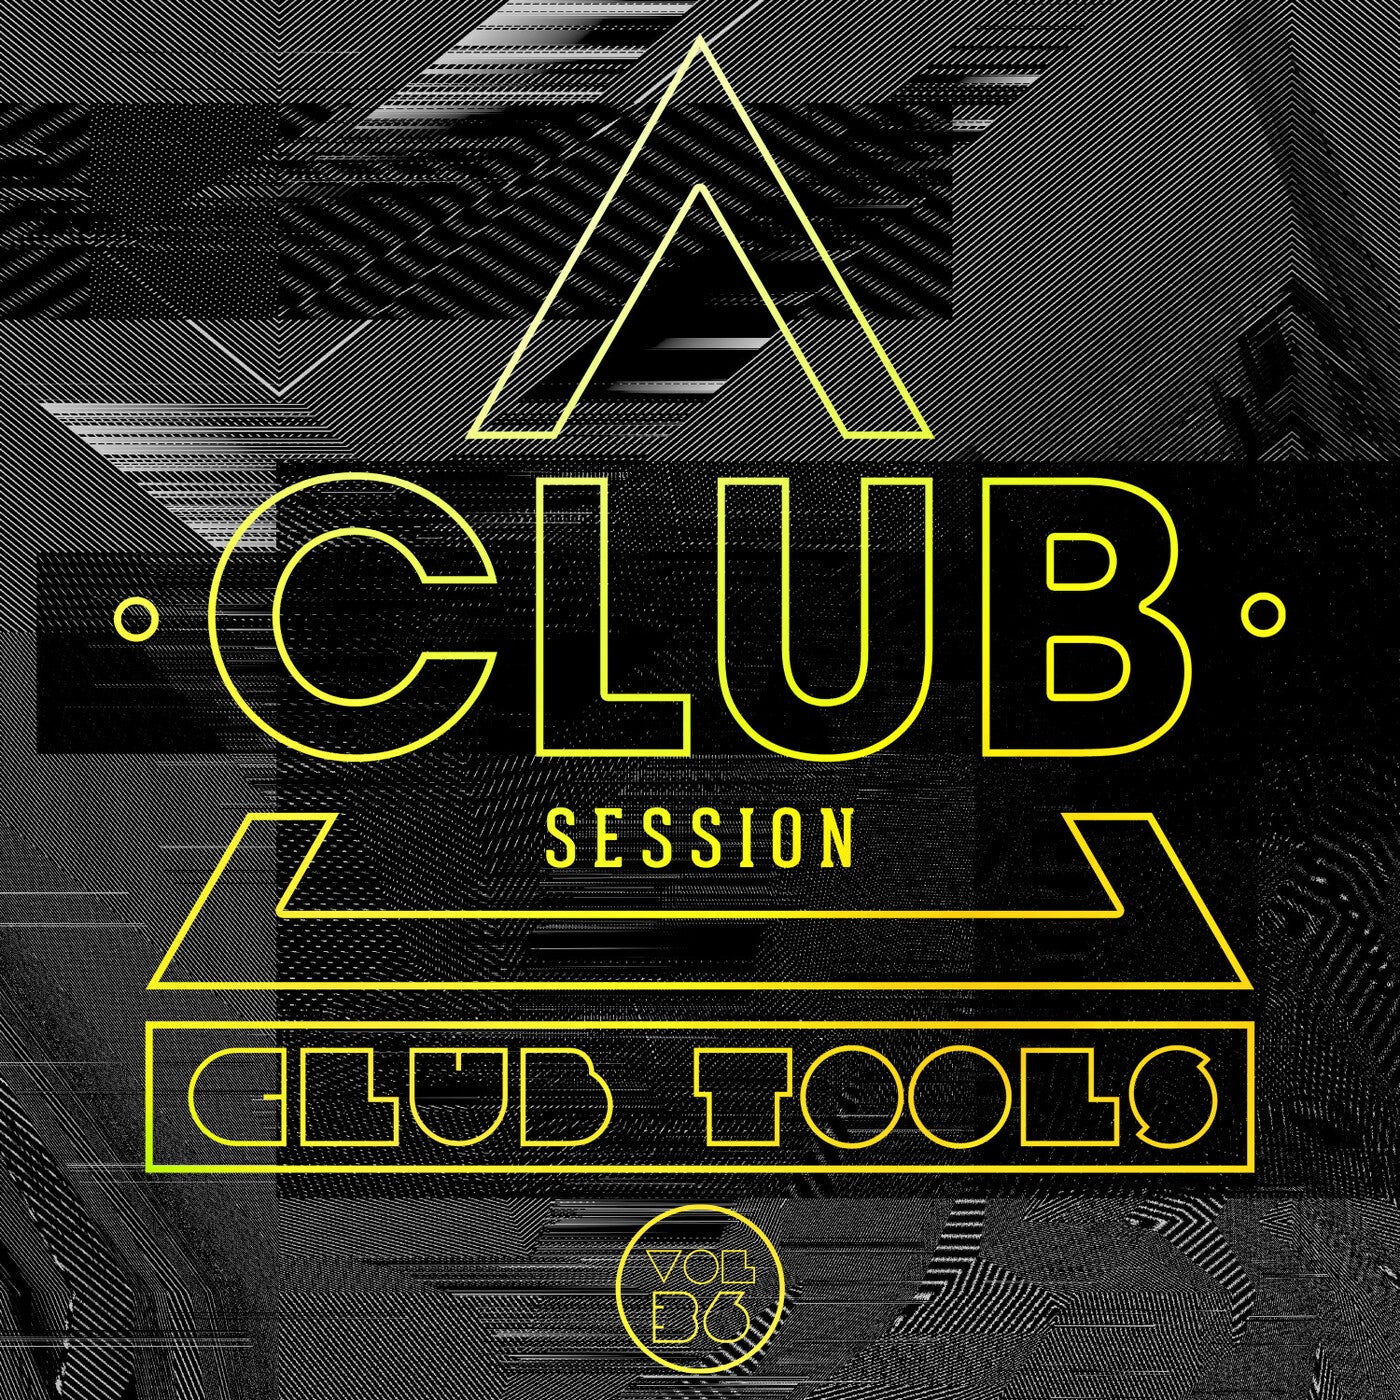 Club Session pres. Club Tools Vol. 36